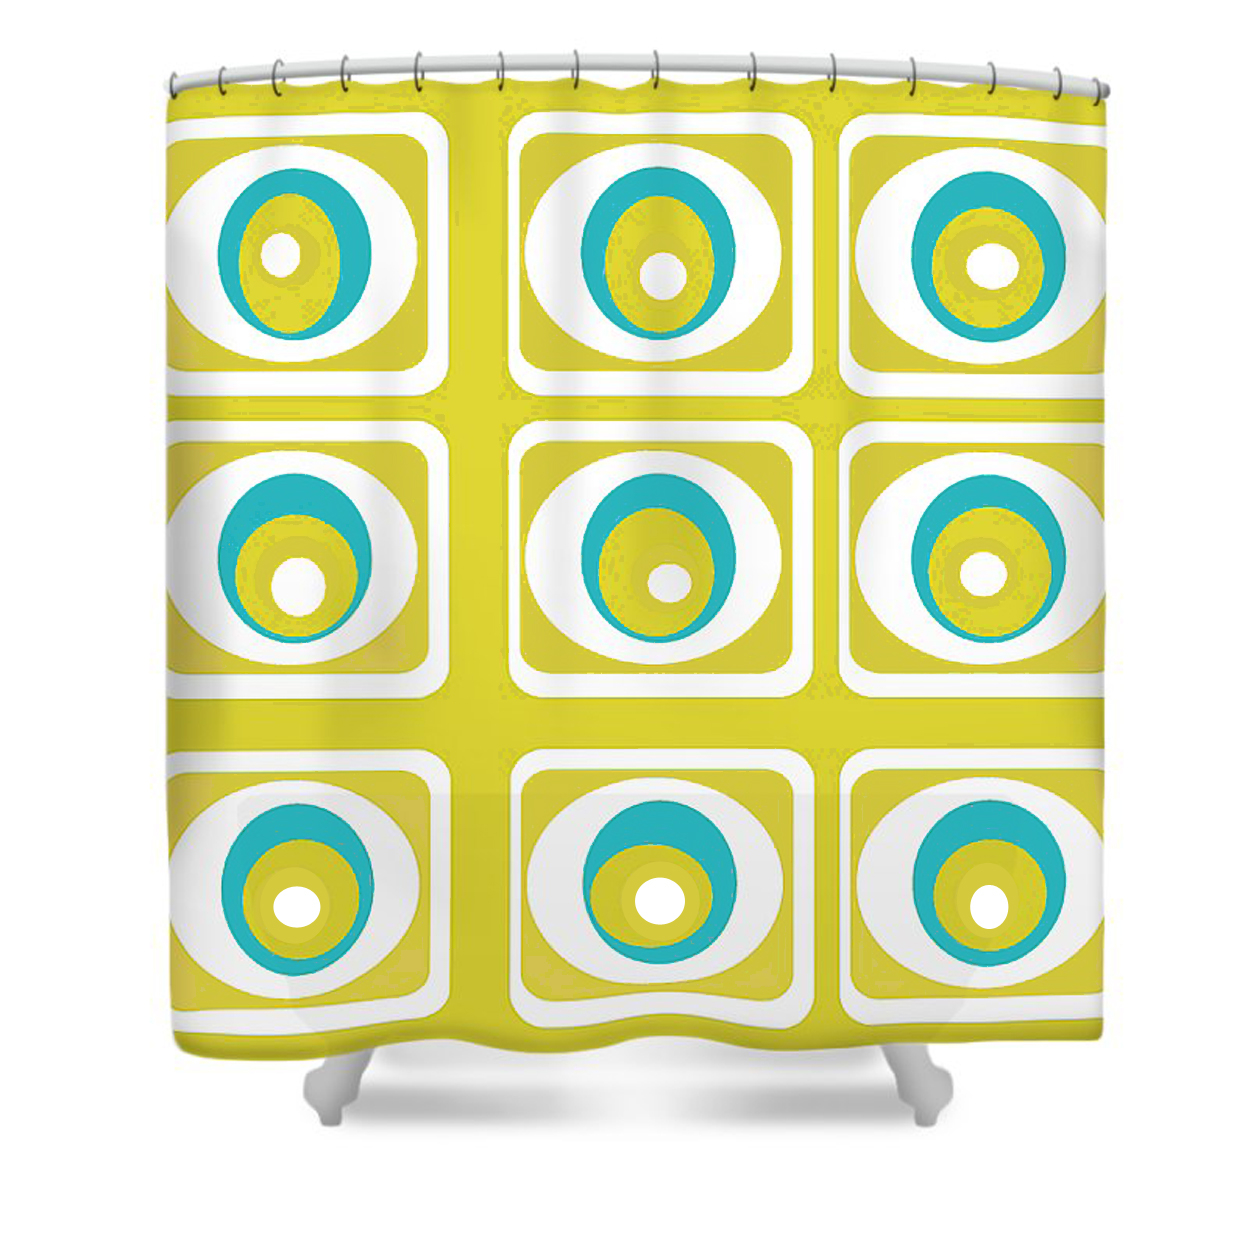 Shower Curtain - Crash Pad Designs Ashton